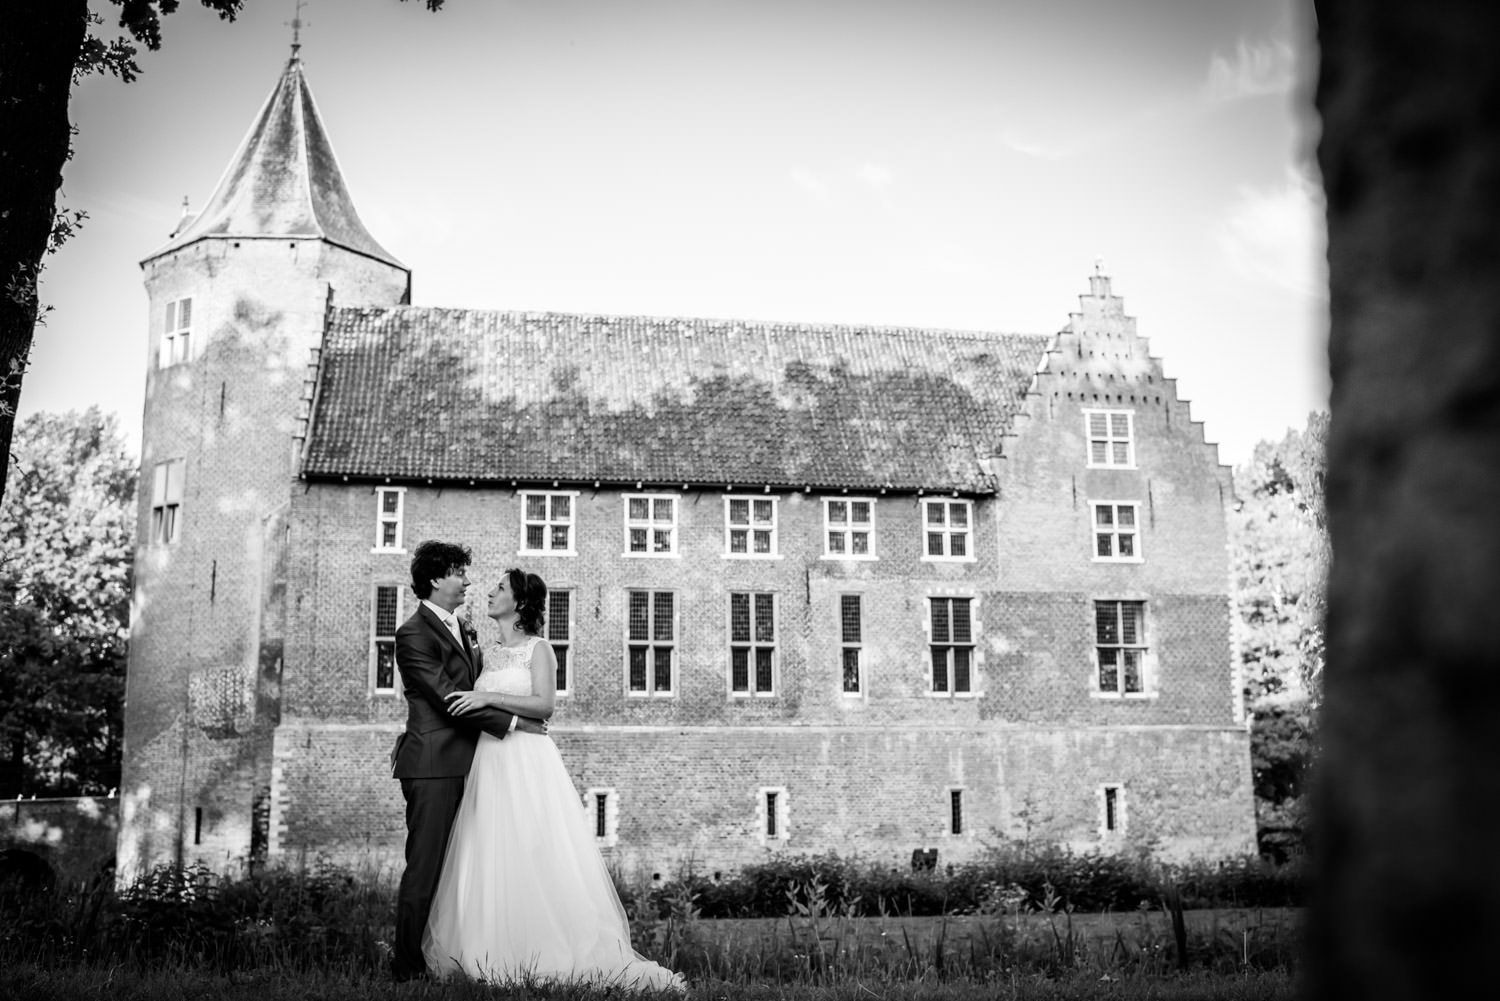 Cfoto maakt foto bruidspaar met kasteel Dussen op de achtergrond